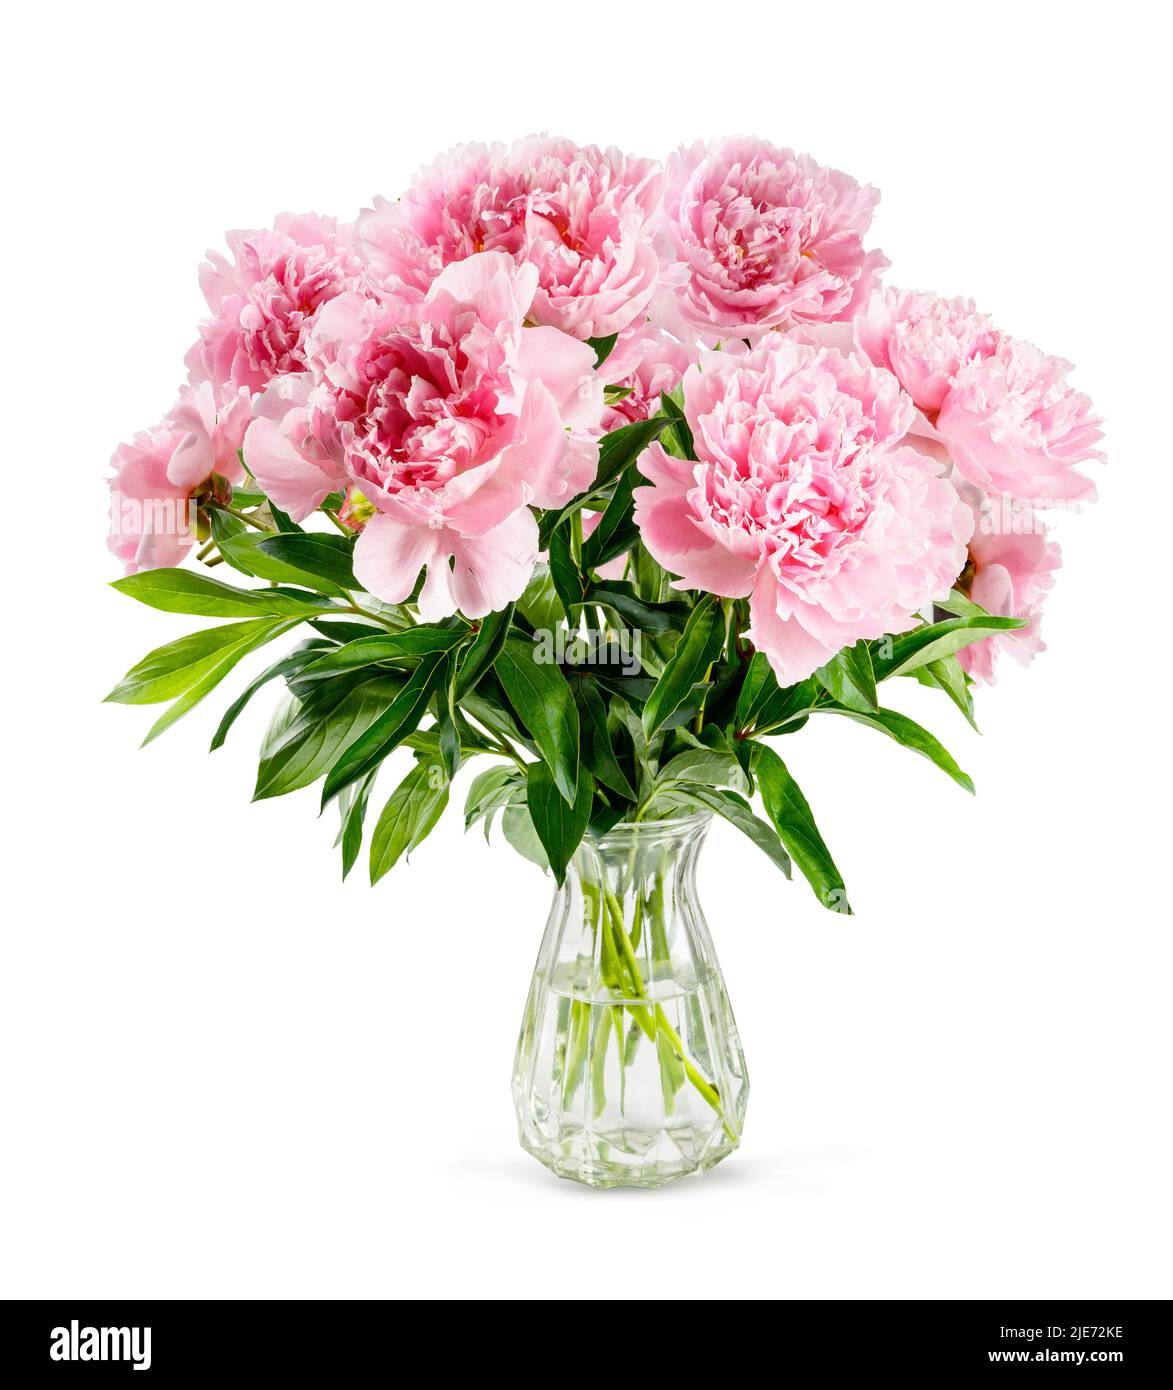 Fiori rosa di peonia in vaso di vetro isolato su sfondo bianco. Bouquet di peonie. Foto Stock